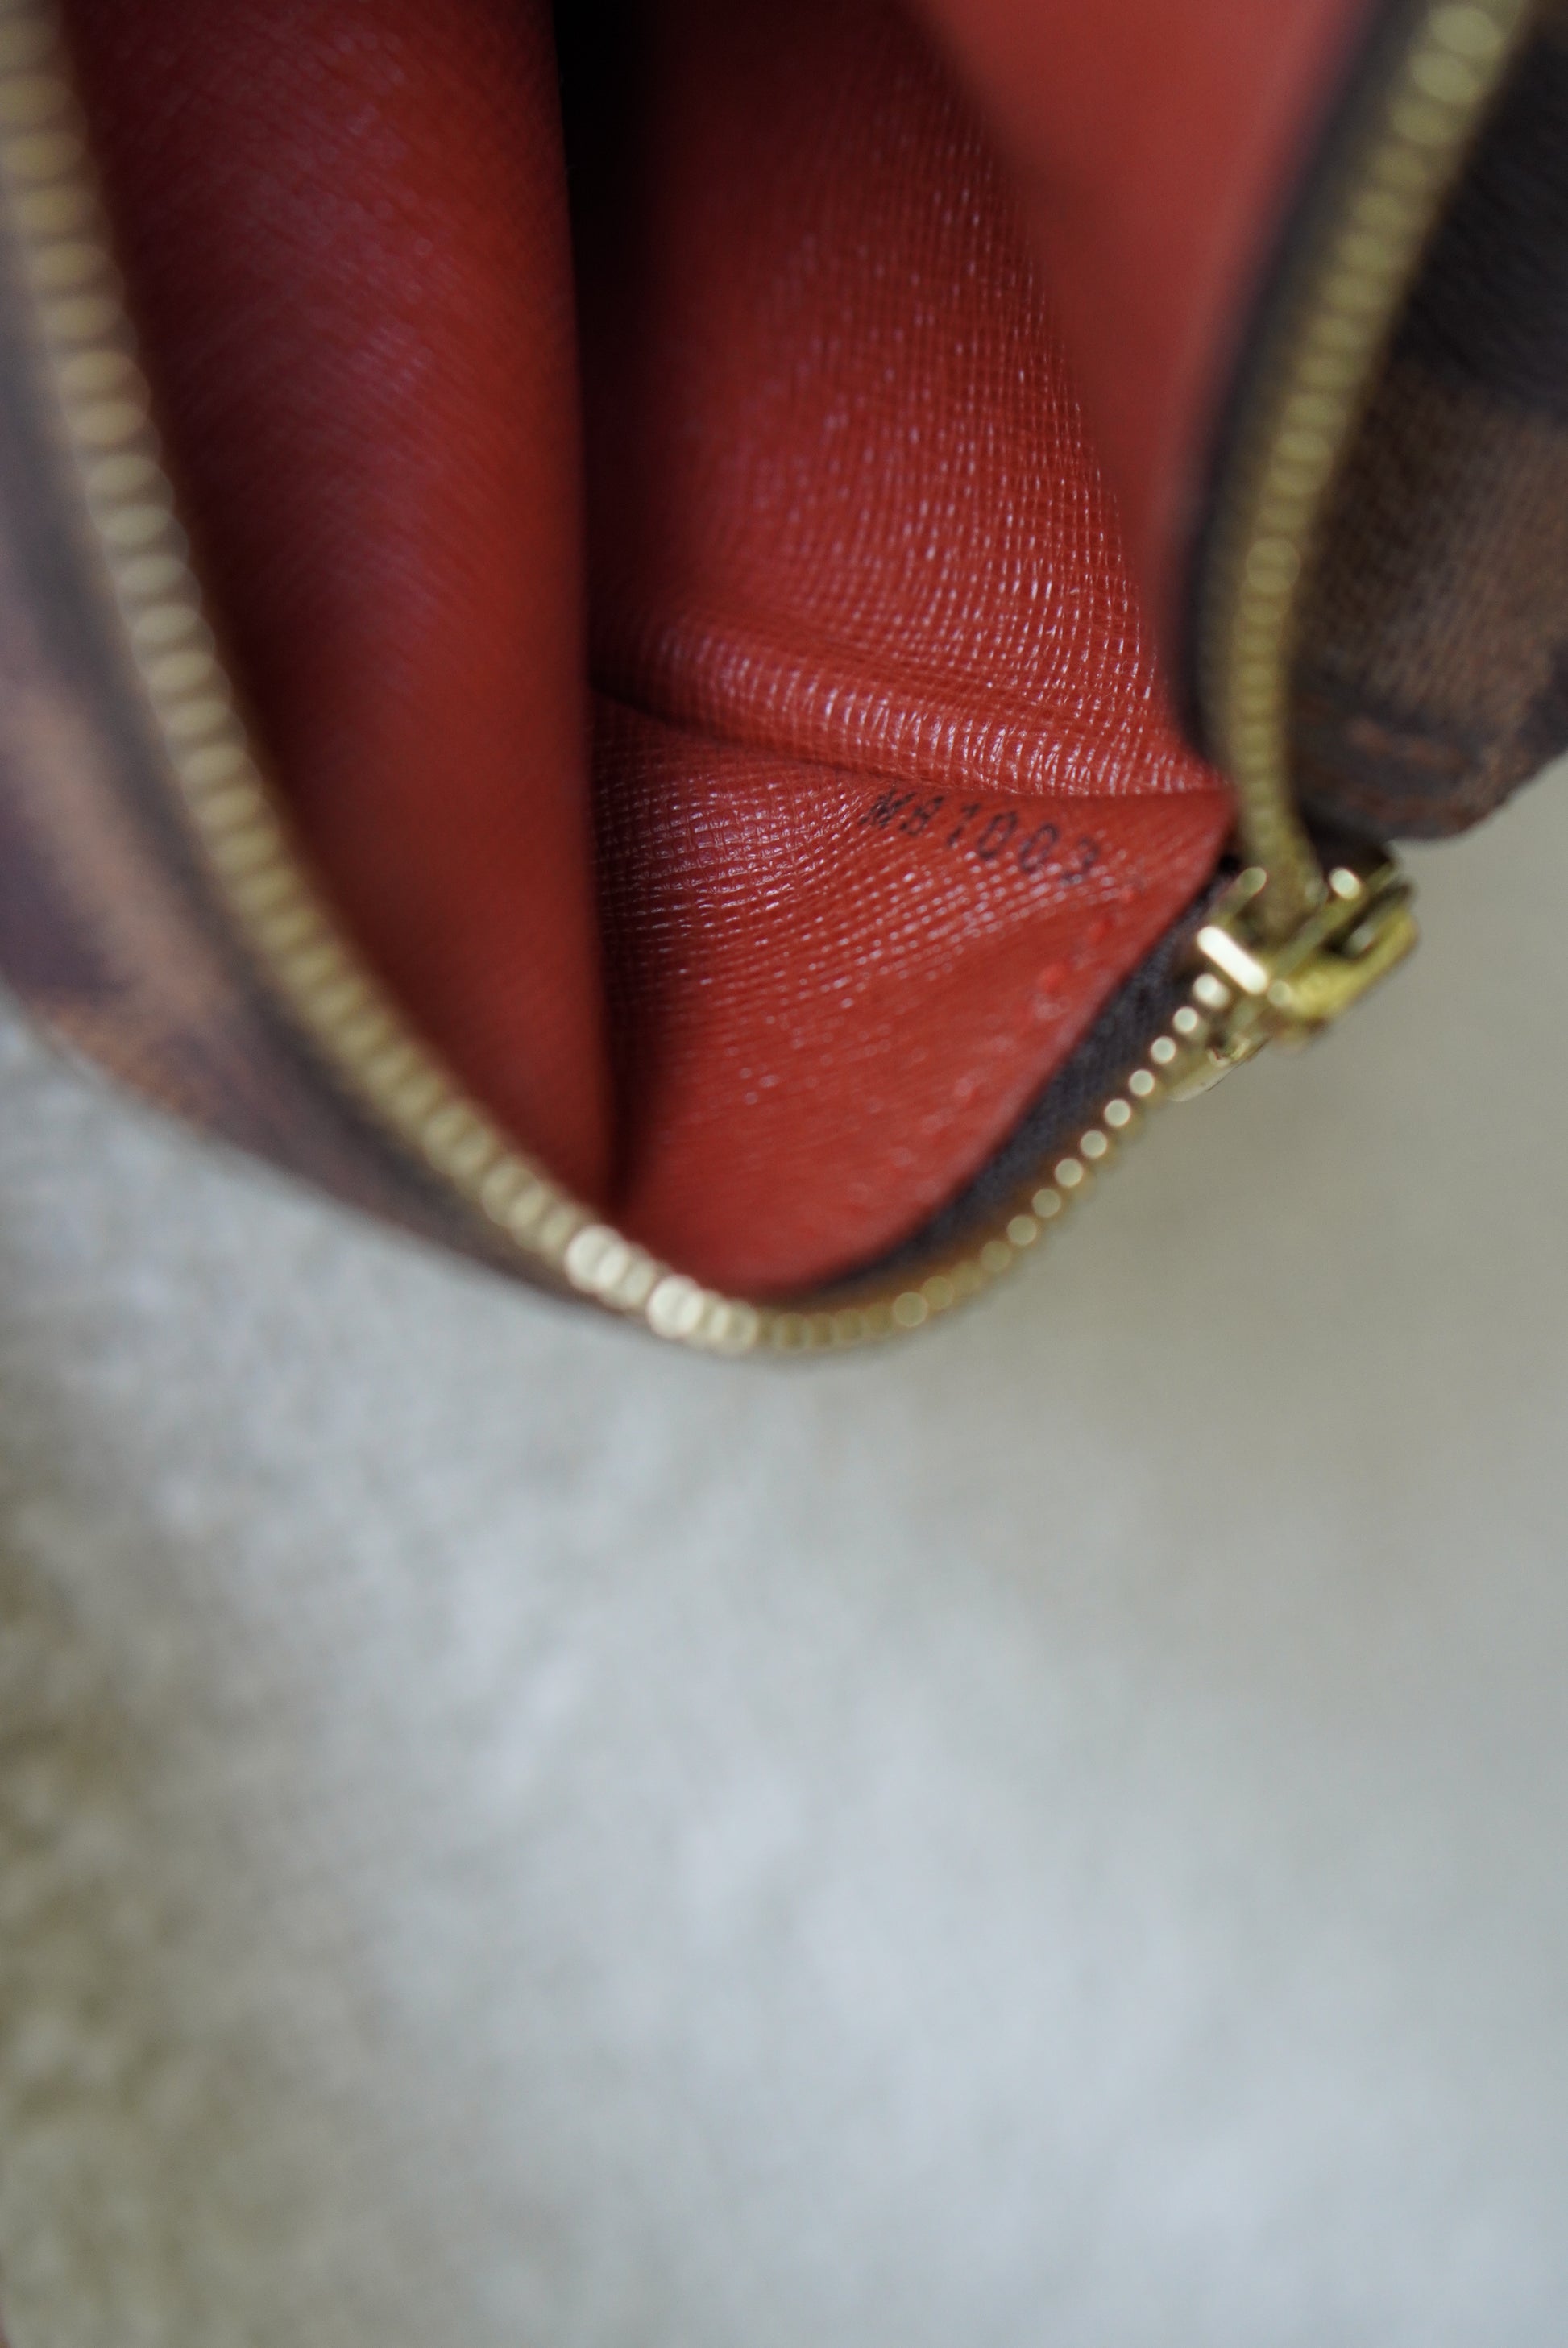 Louis Vuitton 2003 pre-owned Papillon 26 handbag, Brown